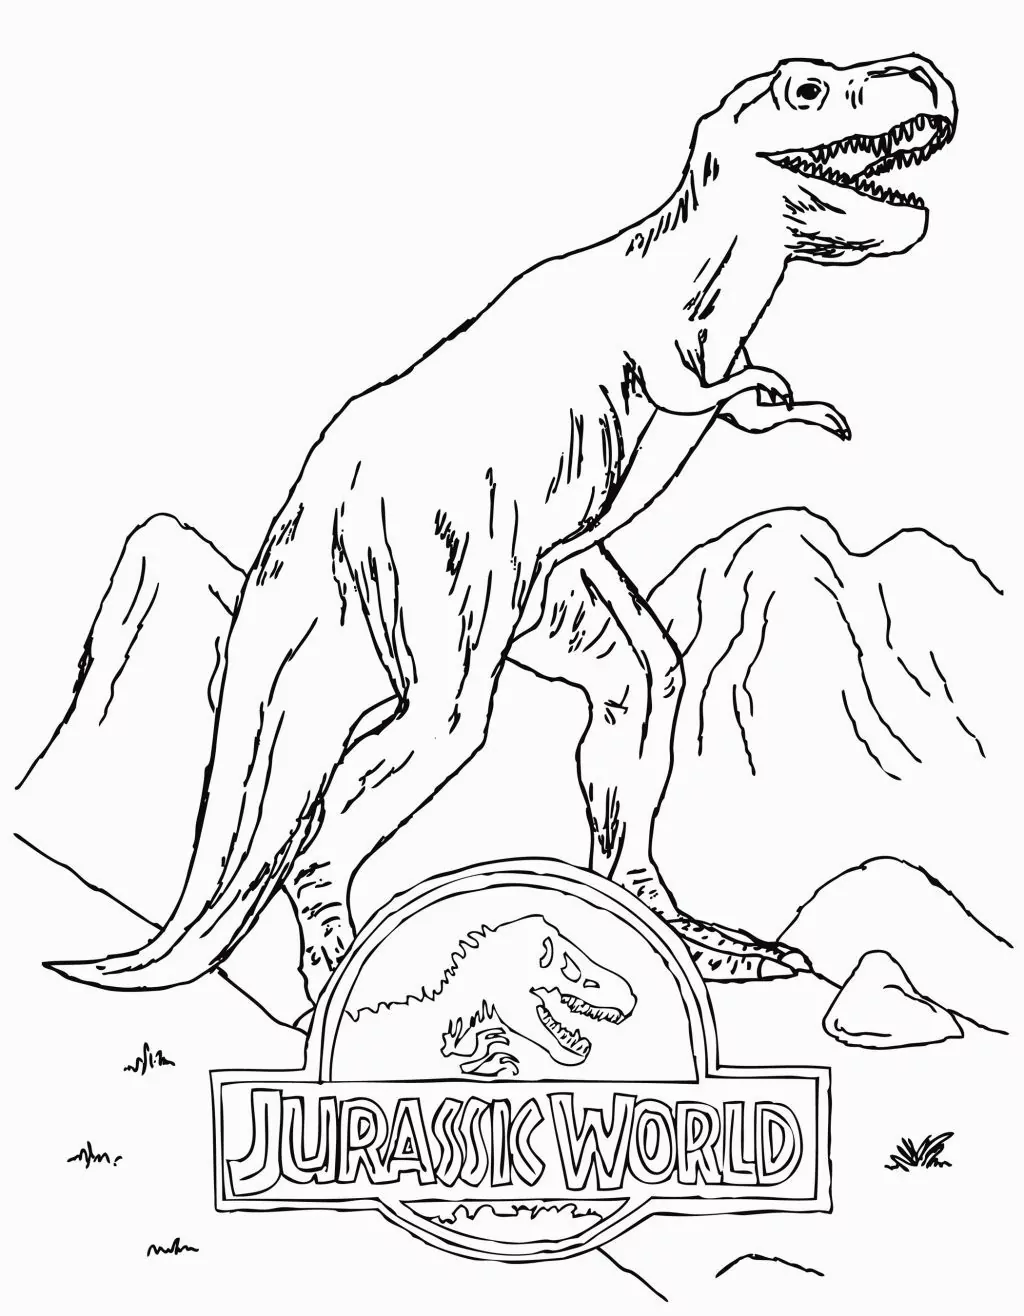 Logo Jurassic World mit T-Rex